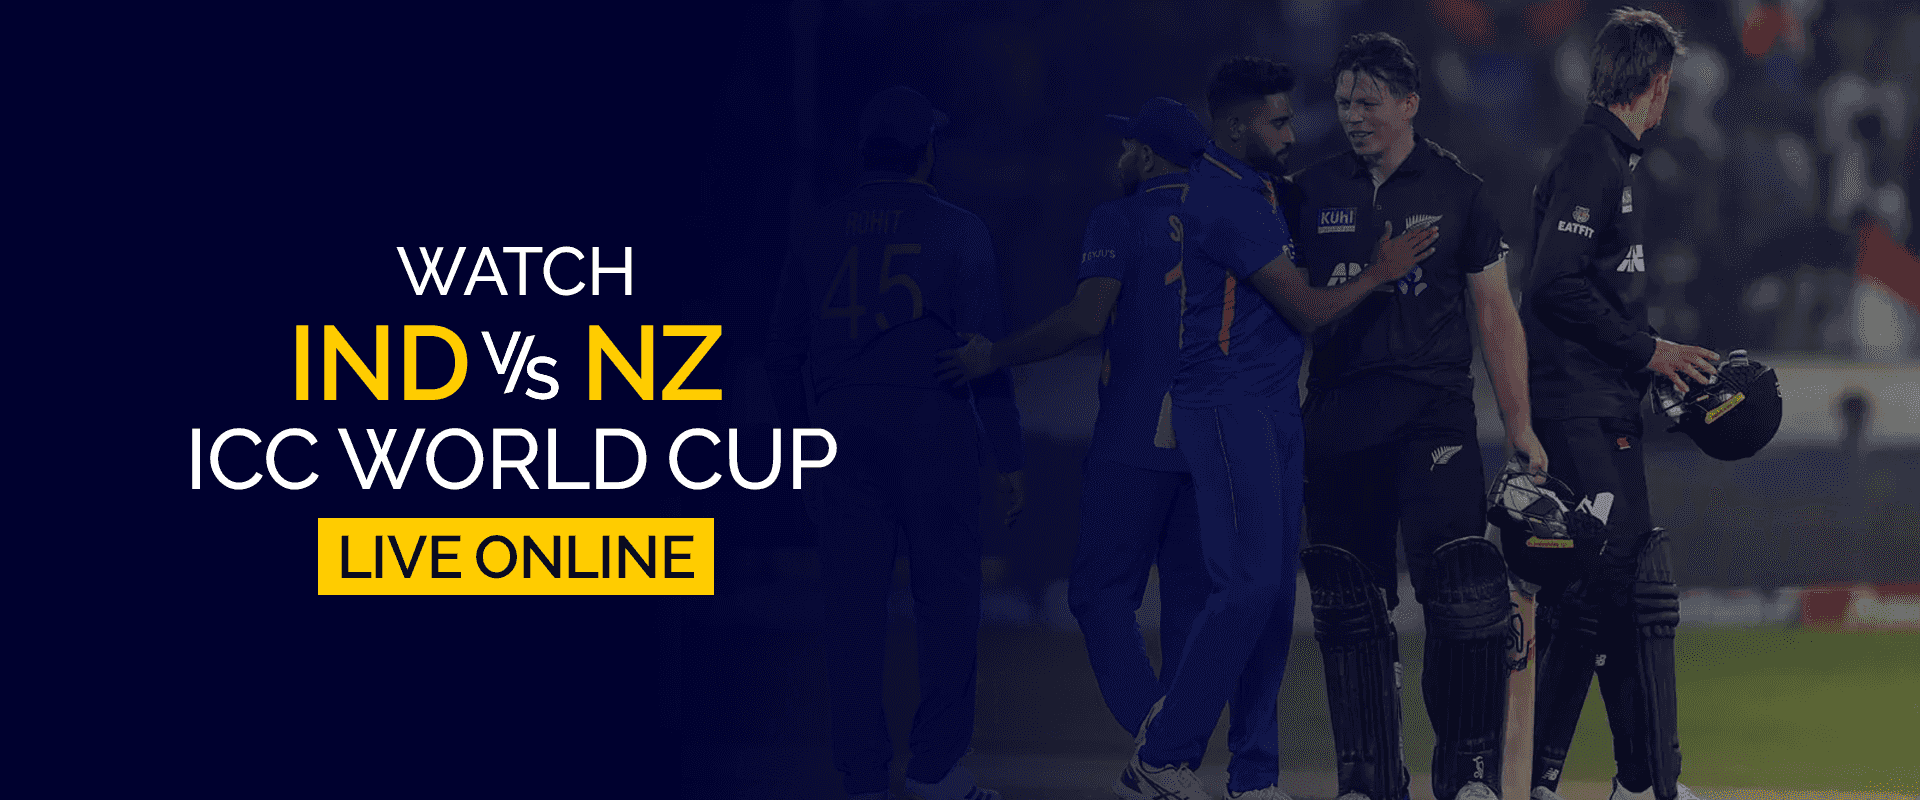 Assistir Índia x Nova Zelândia ICC World Cup ao vivo online